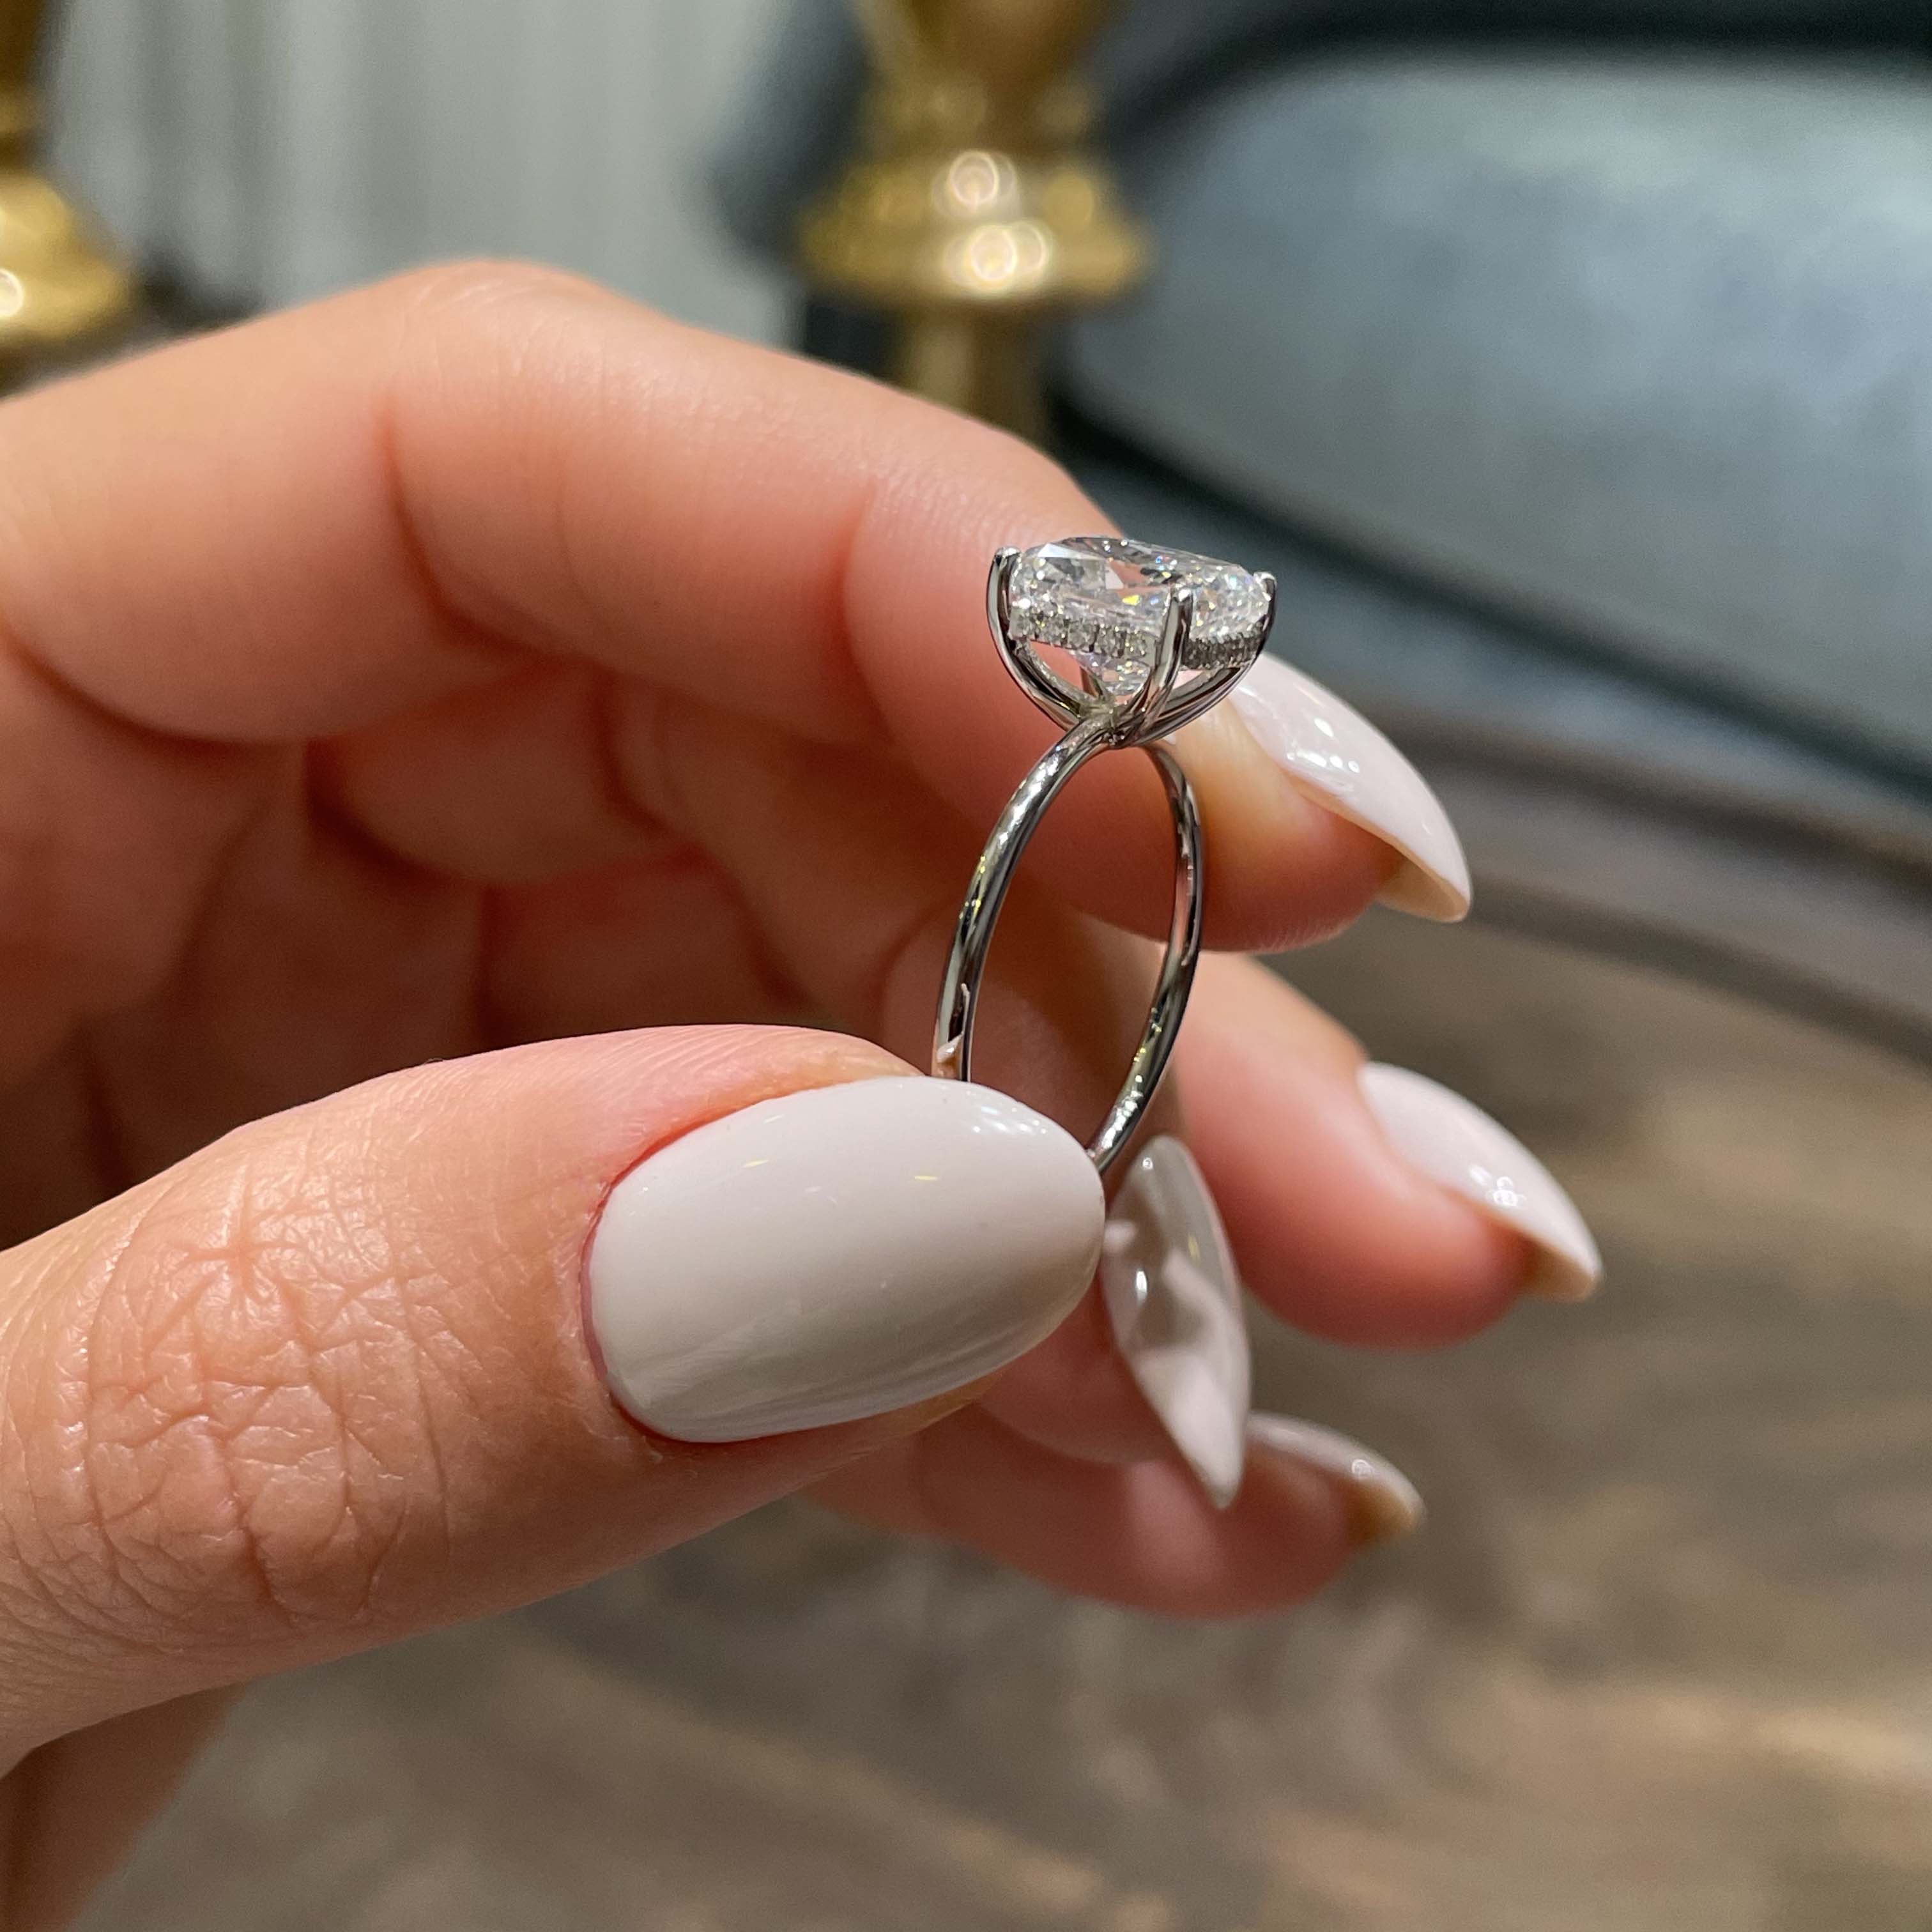 Priscilla Diamond Engagement Ring   (3.1 Carat) -Platinum